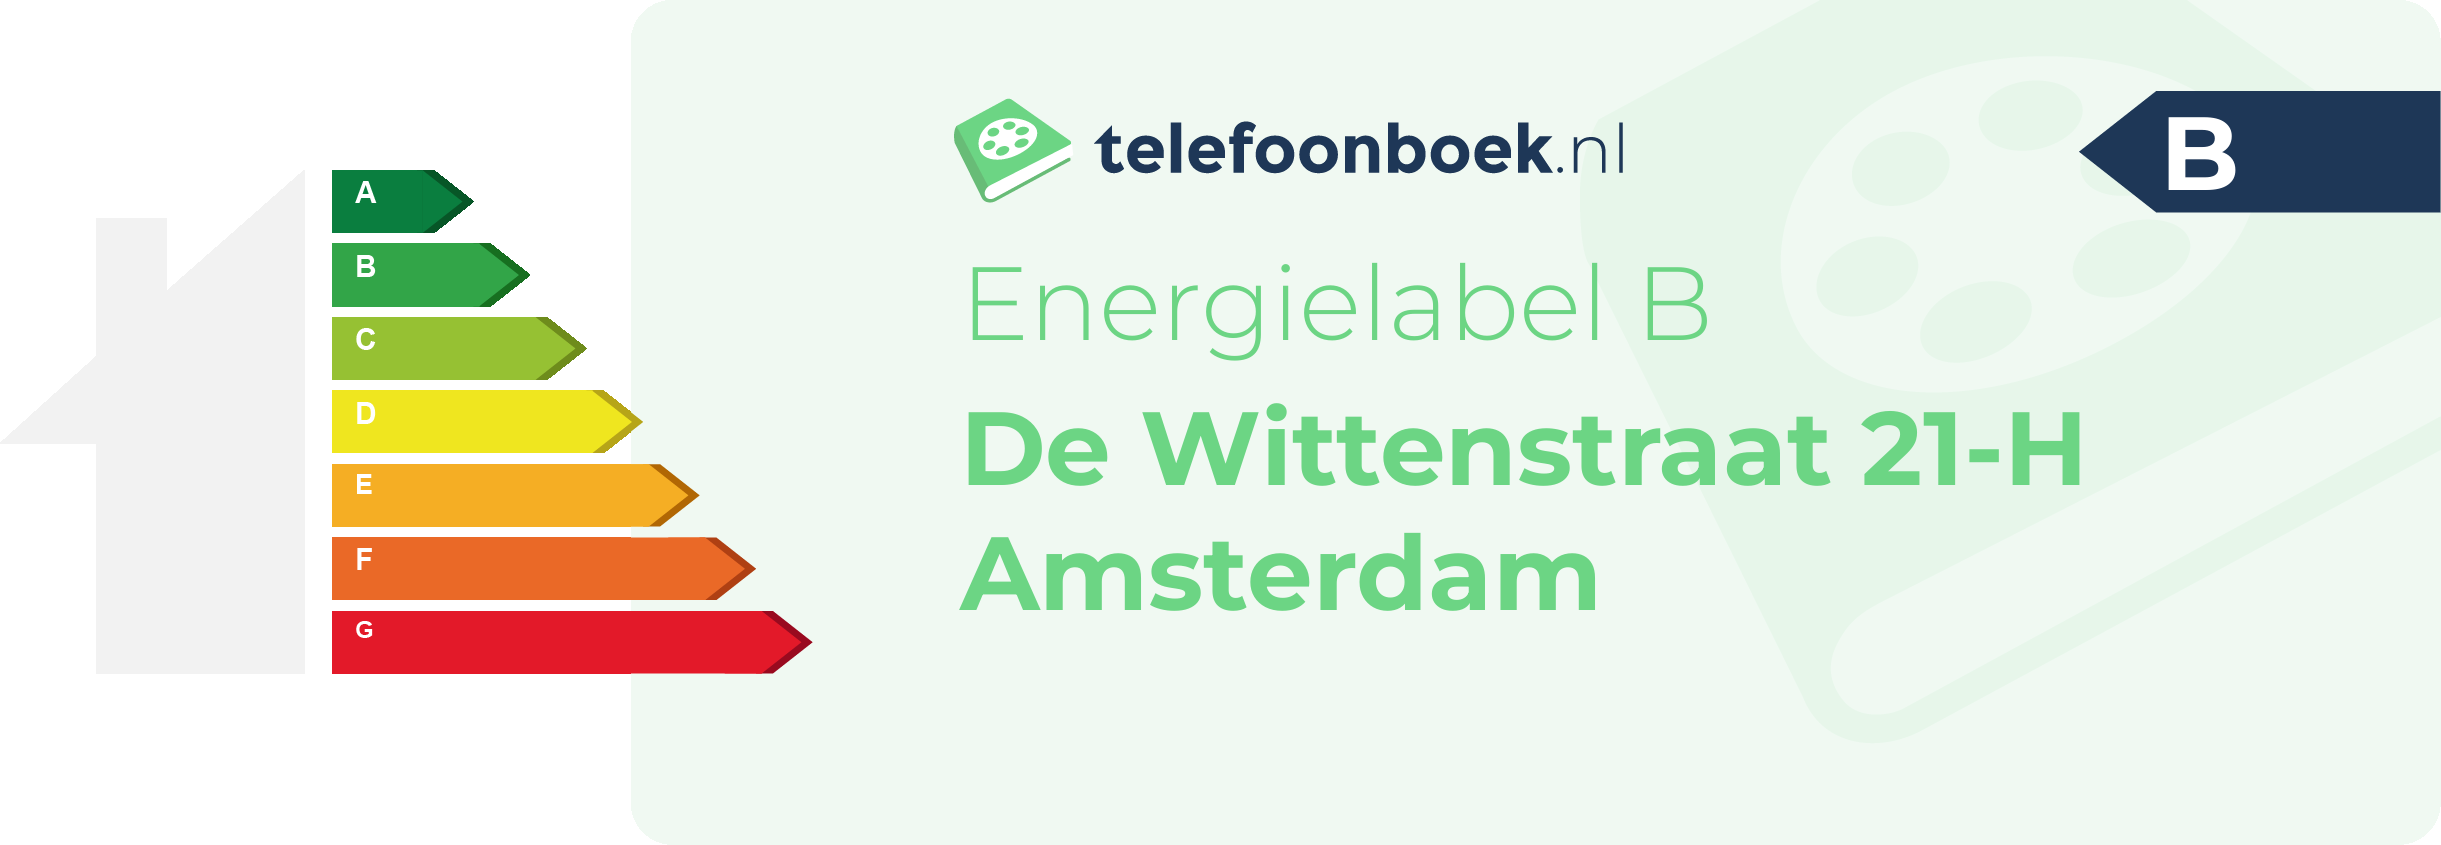 Energielabel De Wittenstraat 21-H Amsterdam